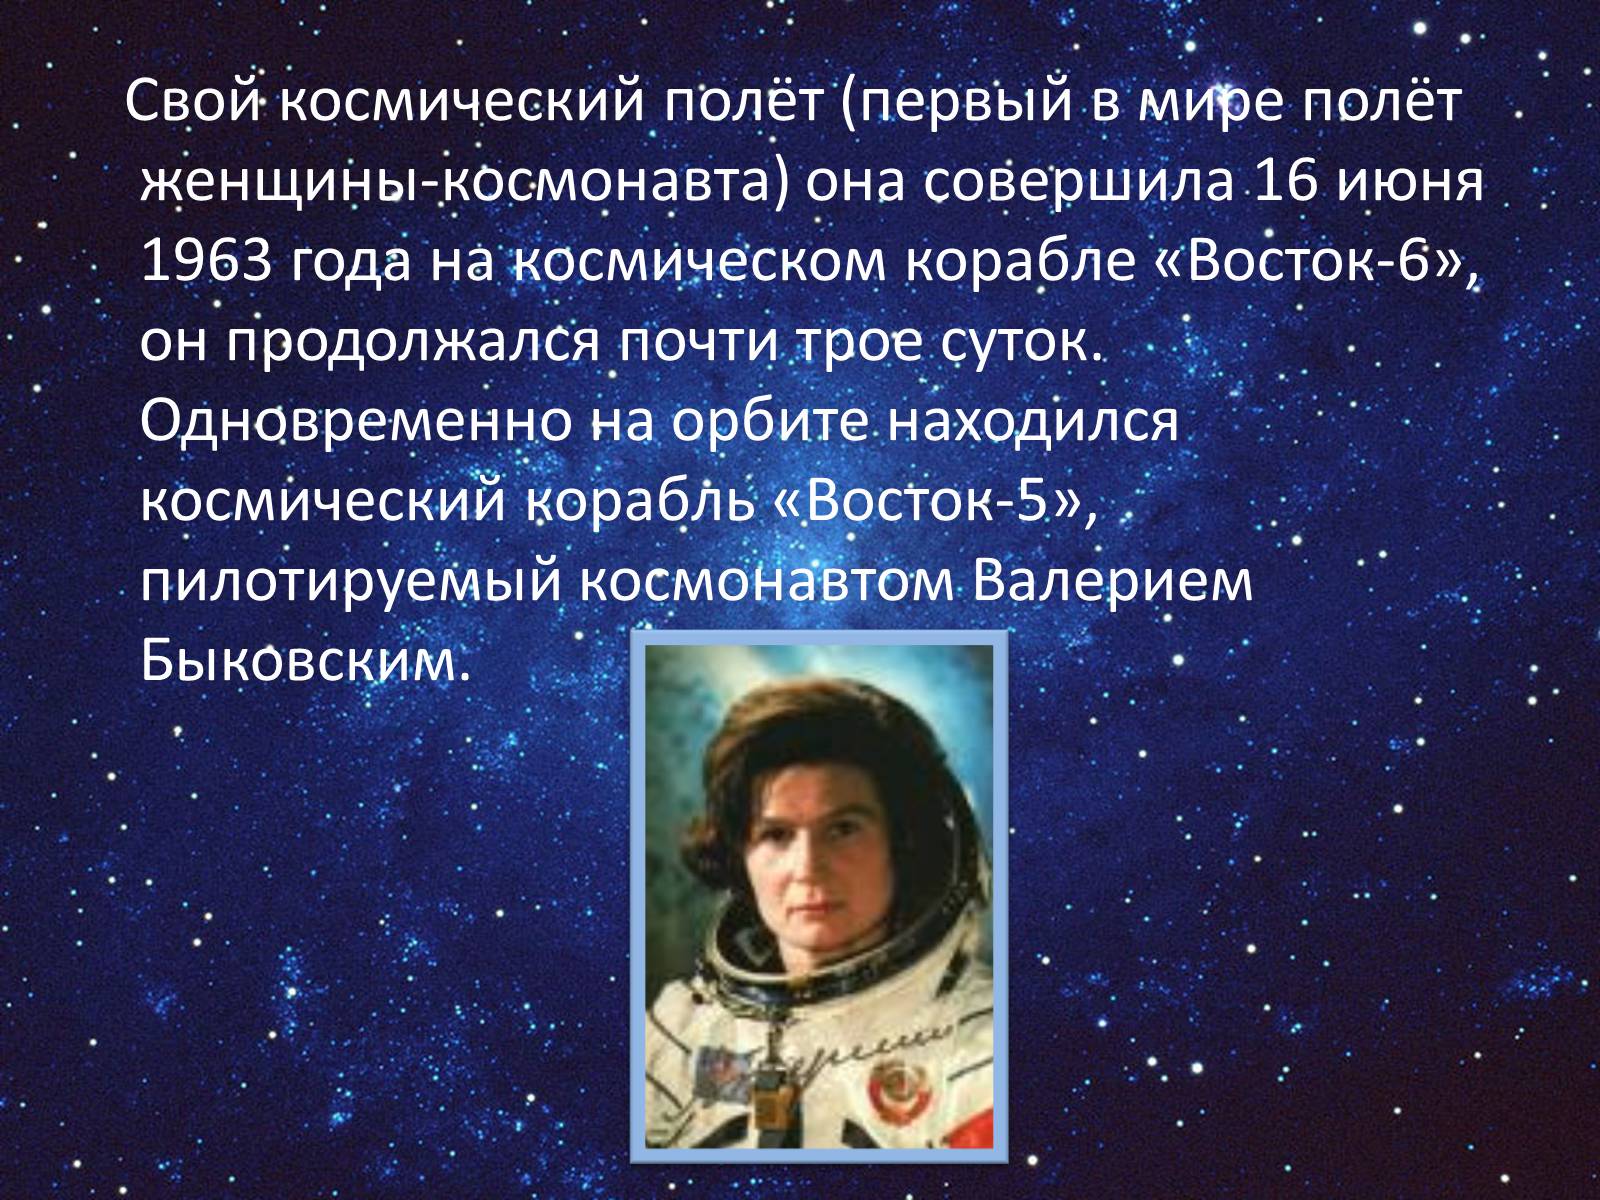 Информация на тему космонавтика